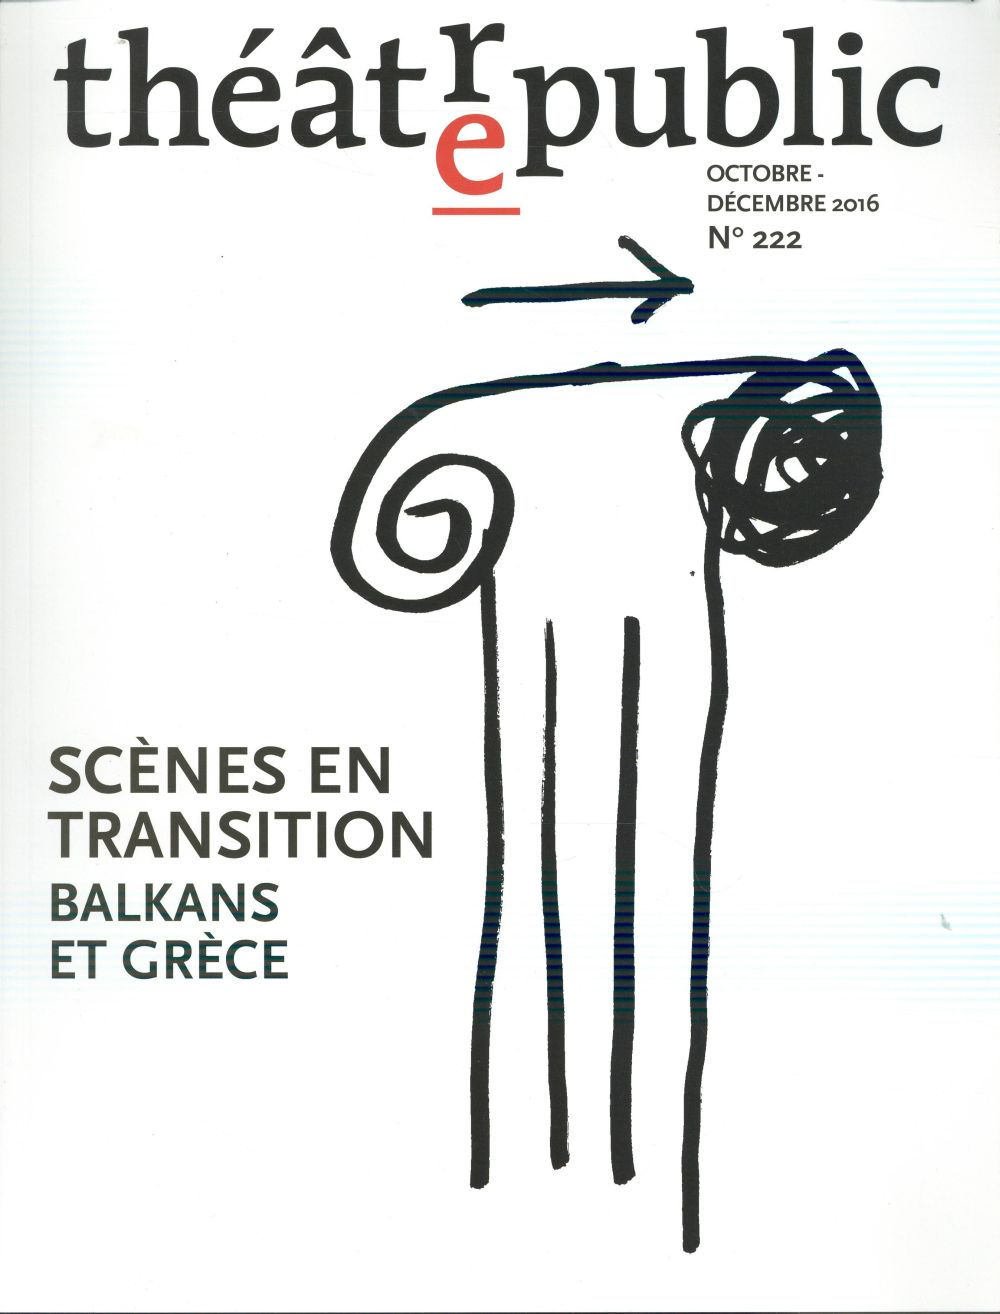 THEATRE PUBLIC N222 - SCENES EN TRANSITION BALKANS ET GRECE